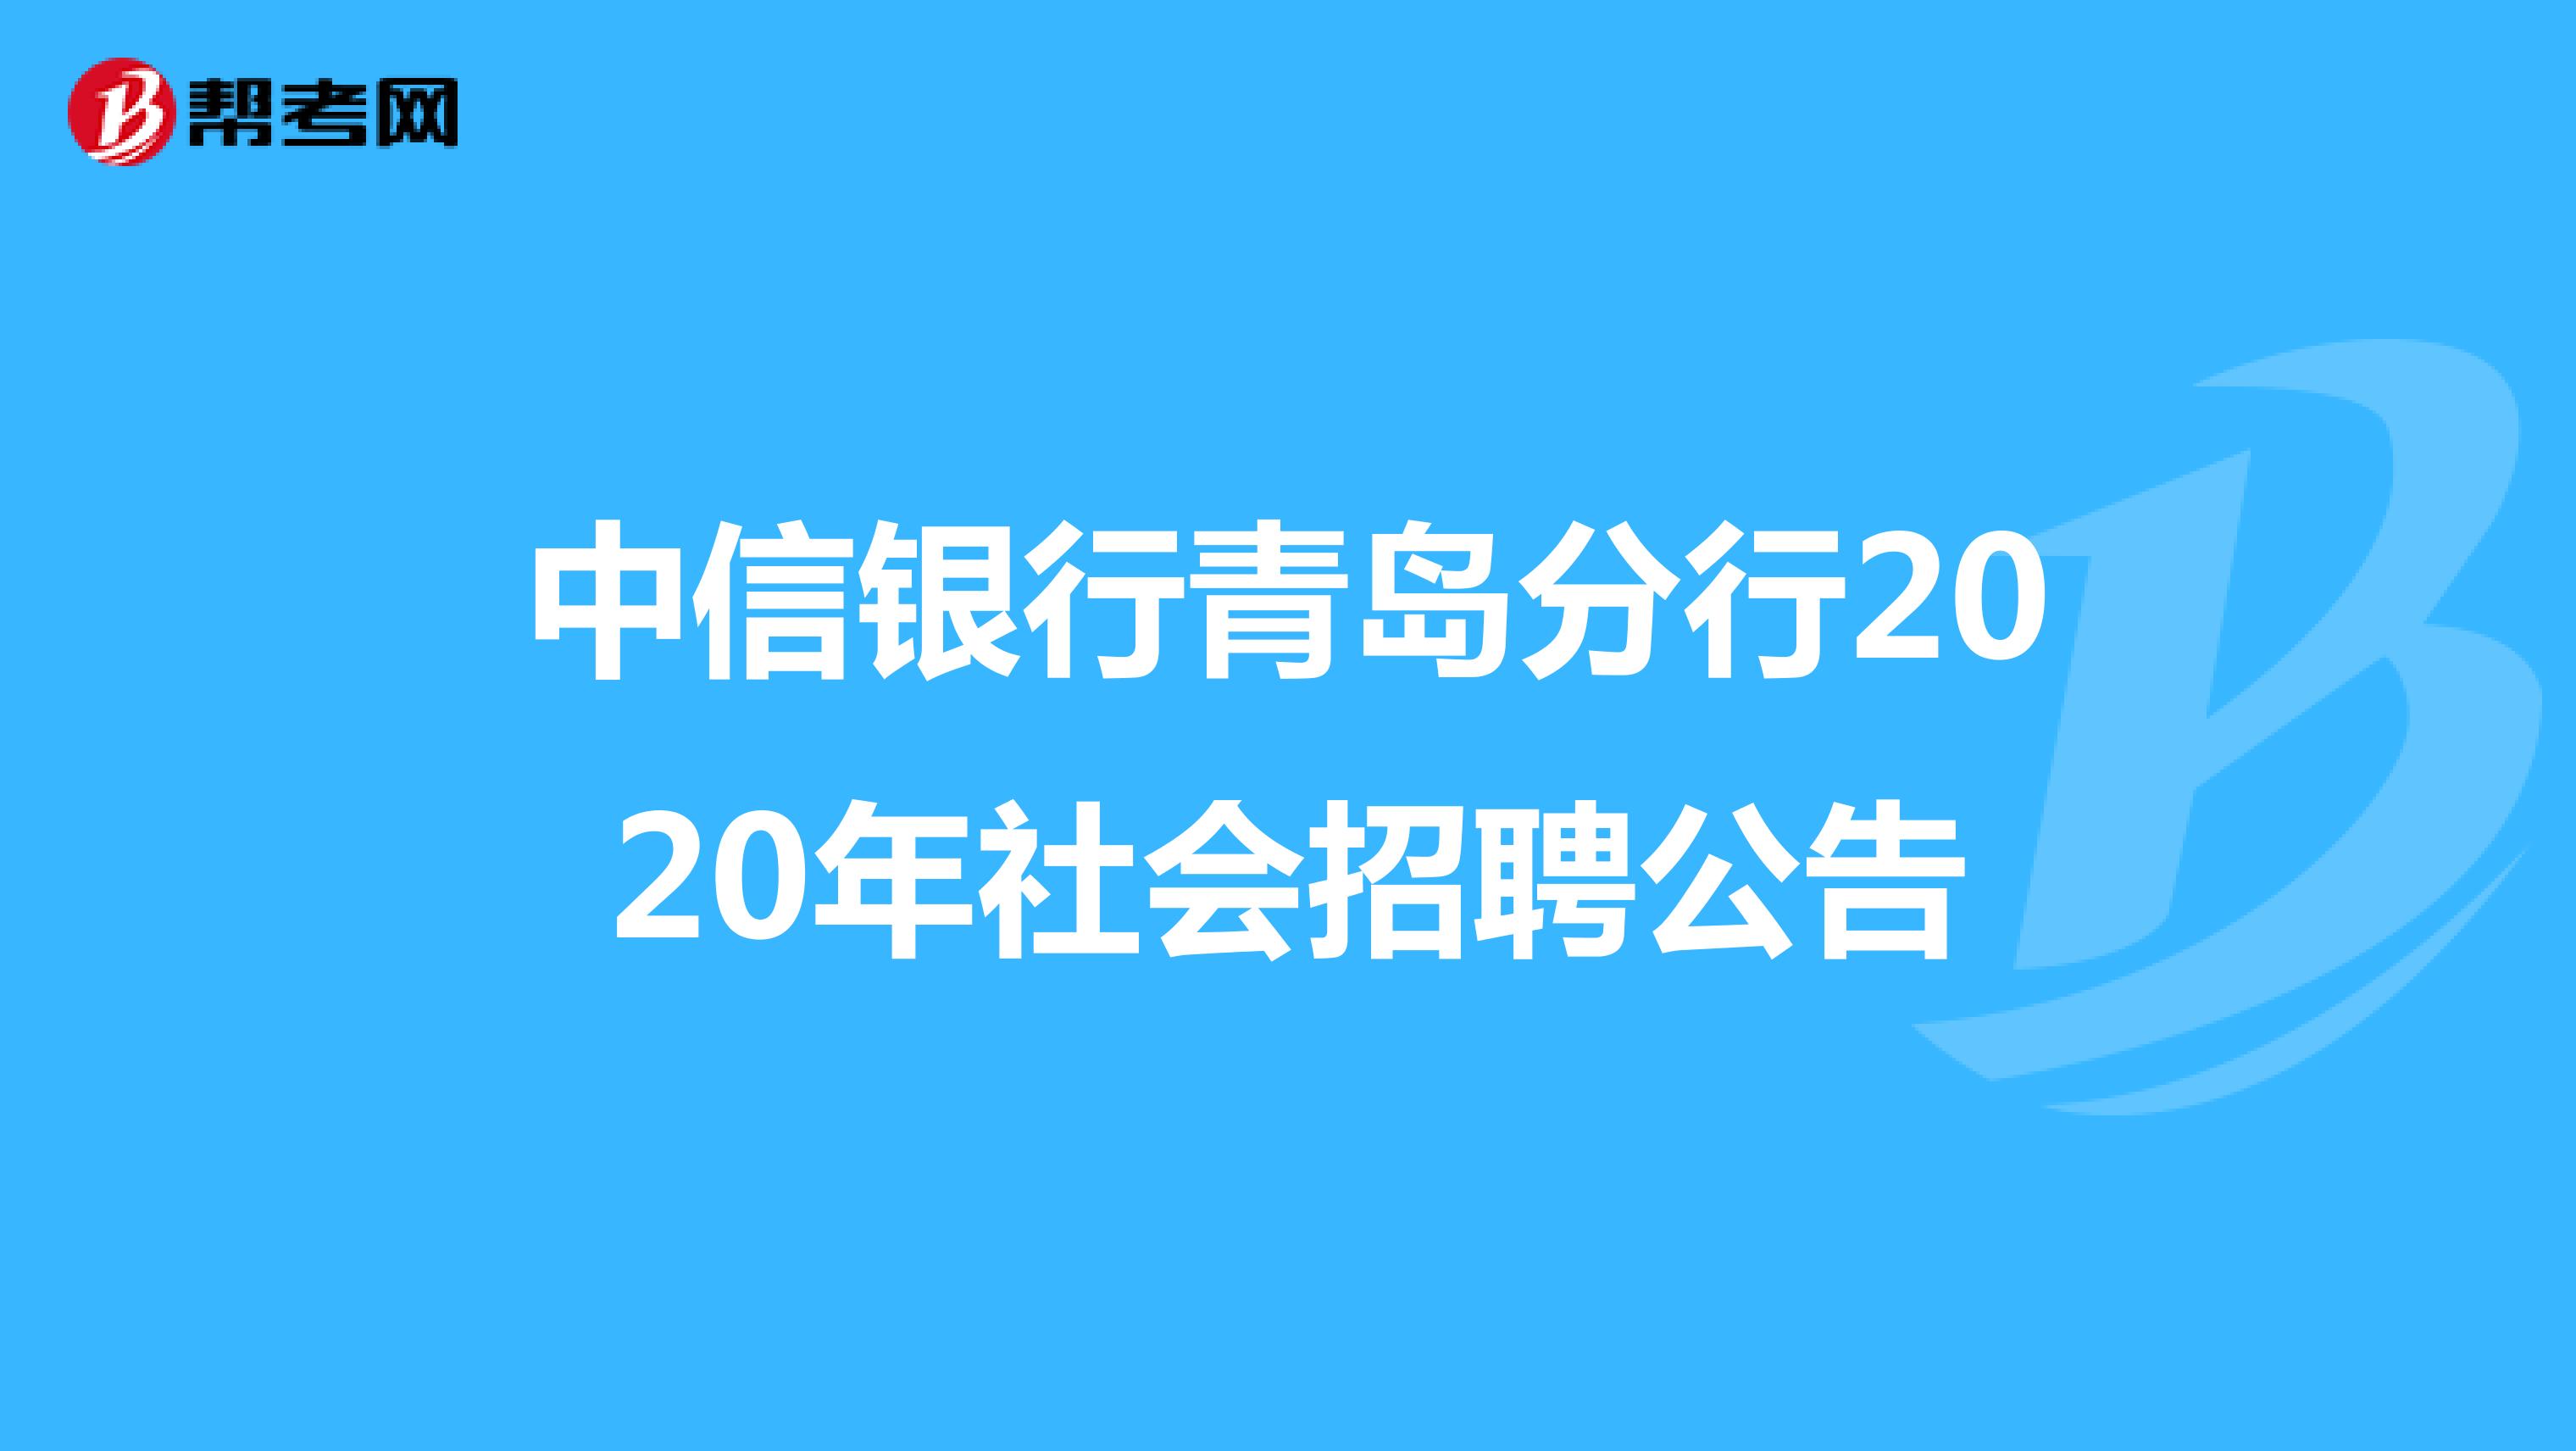 中信银行青岛分行2020年社会招聘公告